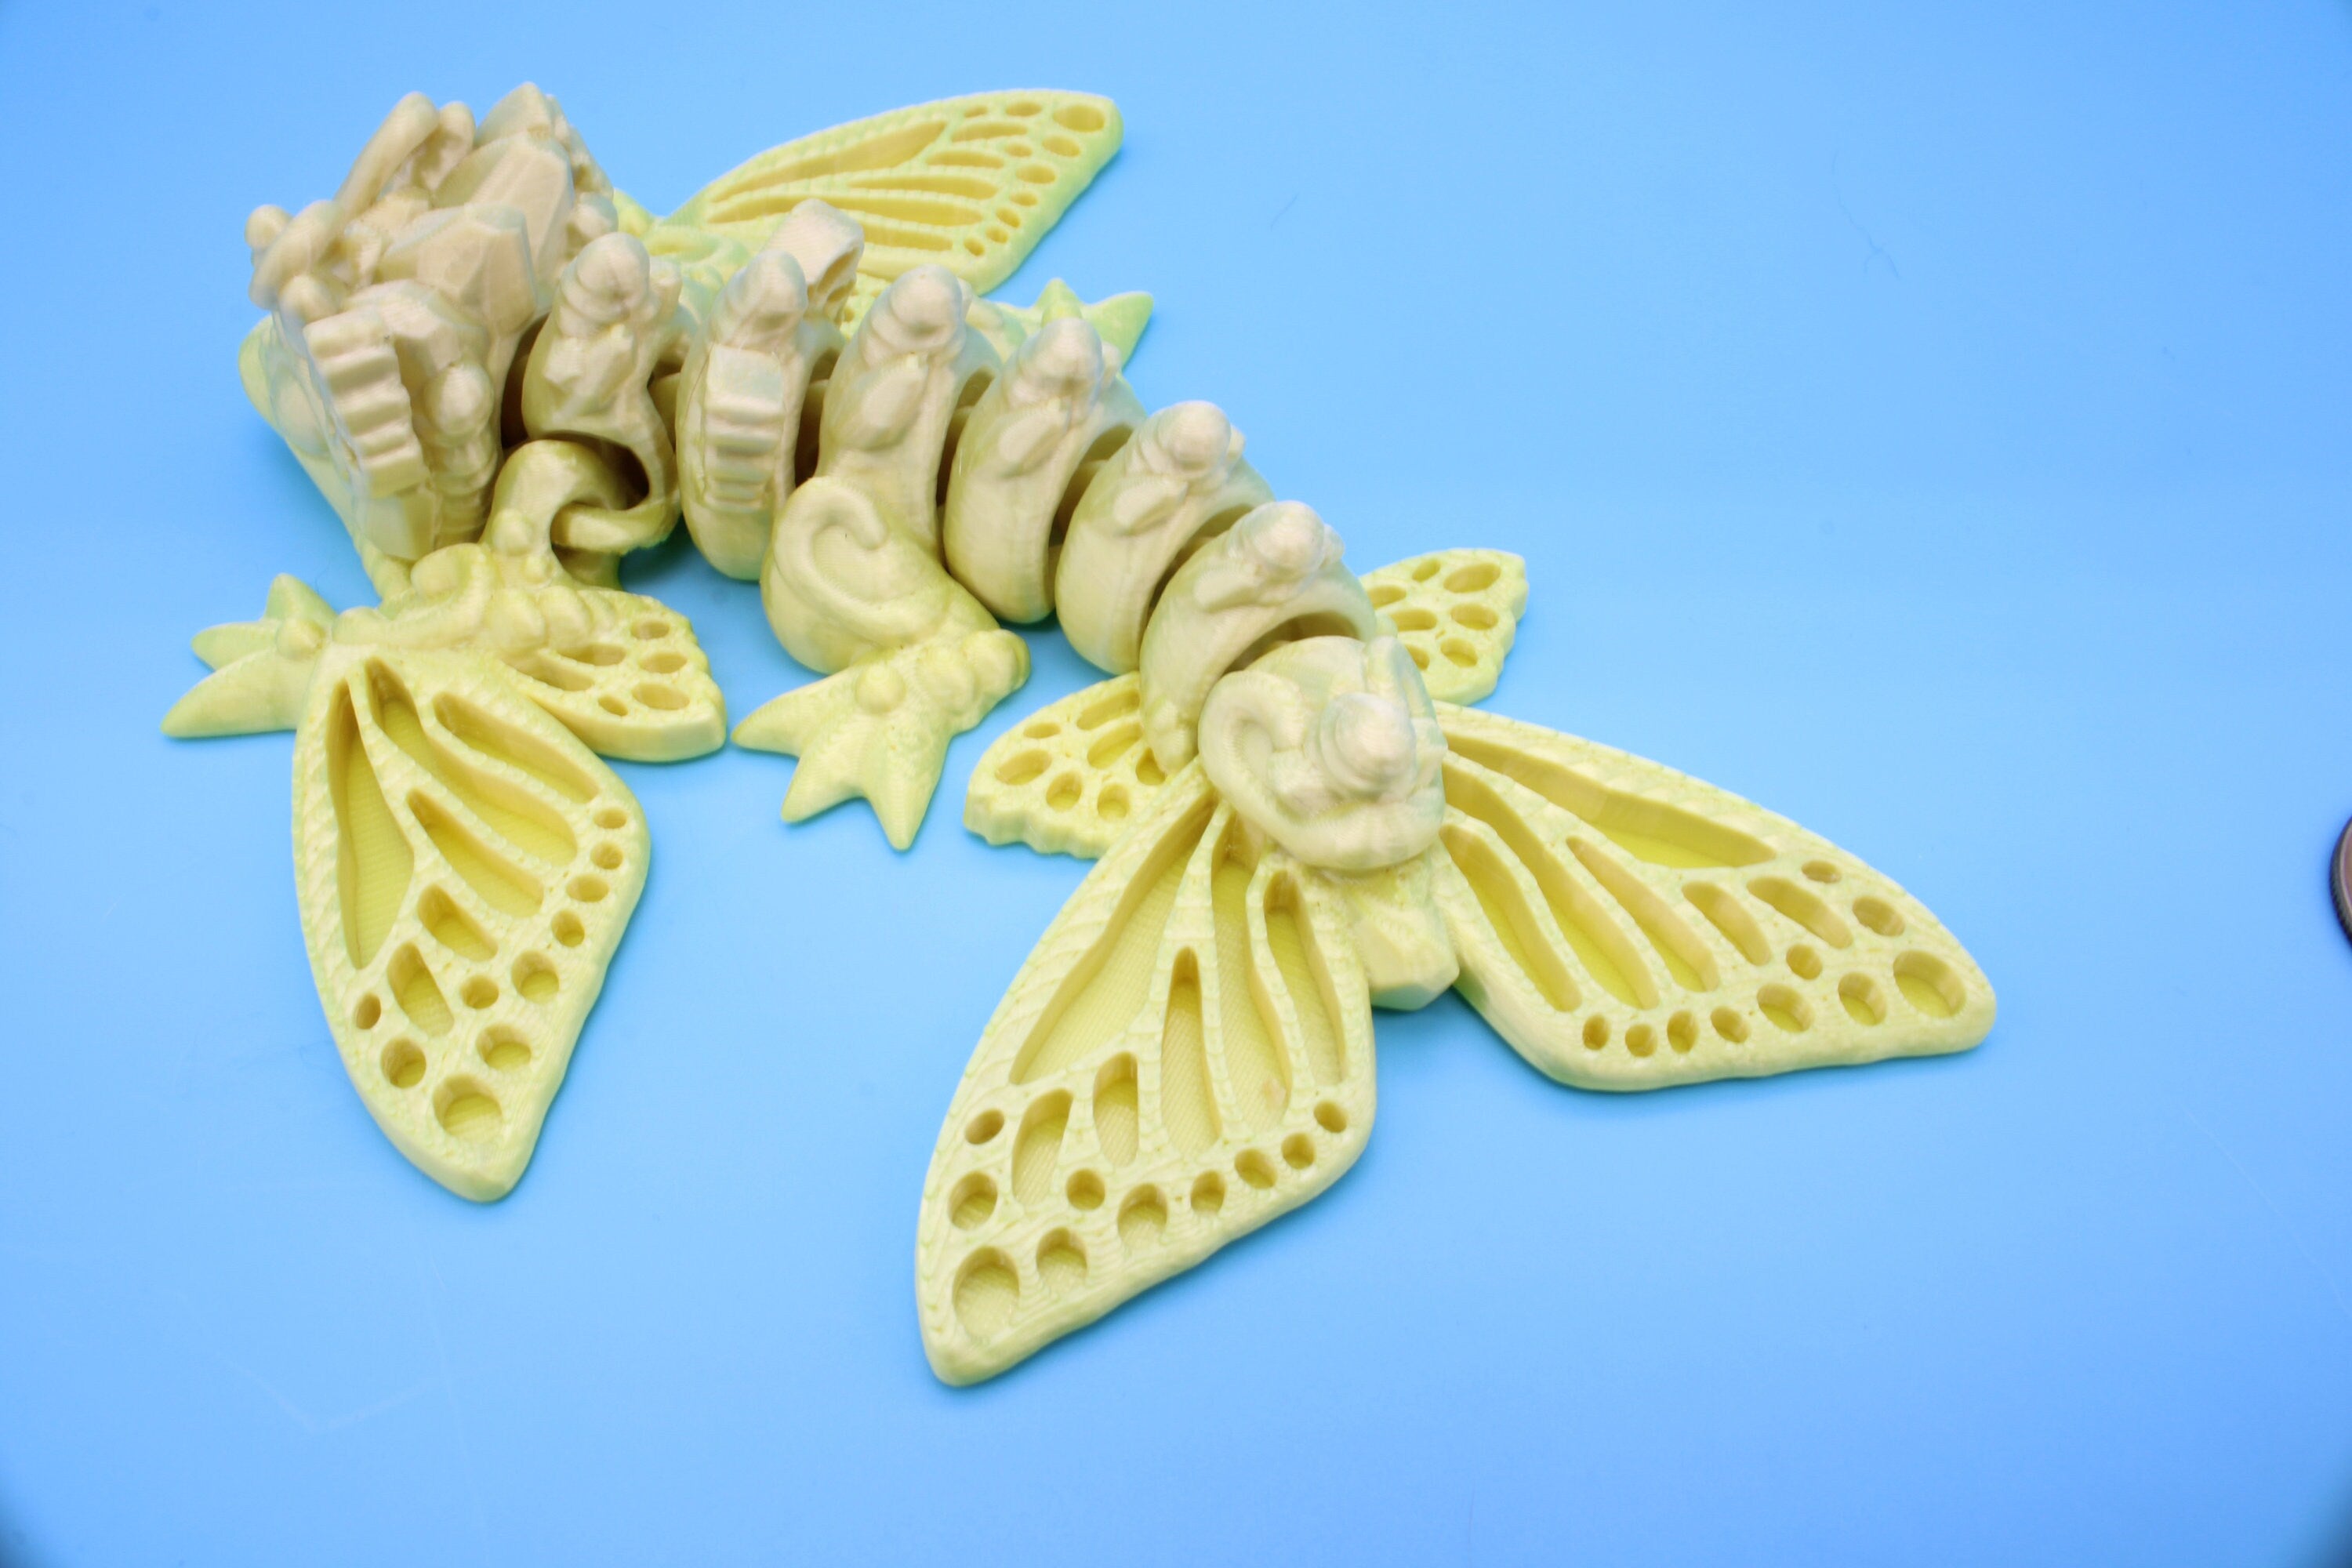 Butterfly Wyvern | 3D Printed | Wyvern Dragon | 6 in. | Dragon Toy | Fidget Toy | Flexi Dragon.